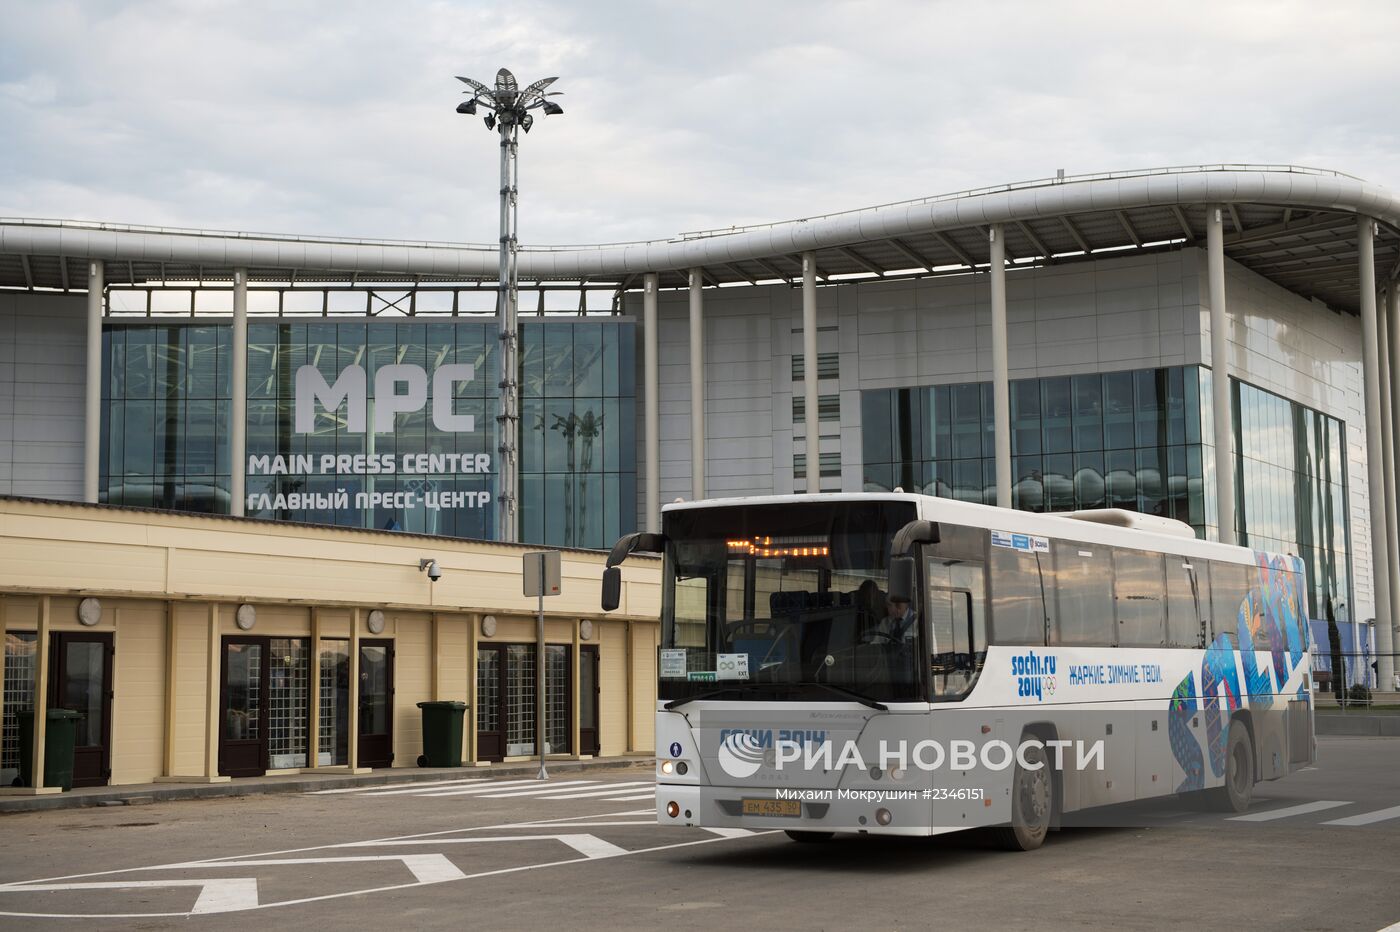 Автобус до олимпийского парка. Главный медиацентр Сочи. Автобусы в Олимпийском парке. Автобусные остановки в Сочи в Олимпийском парке. Электро автобус в Олимпийском парке.